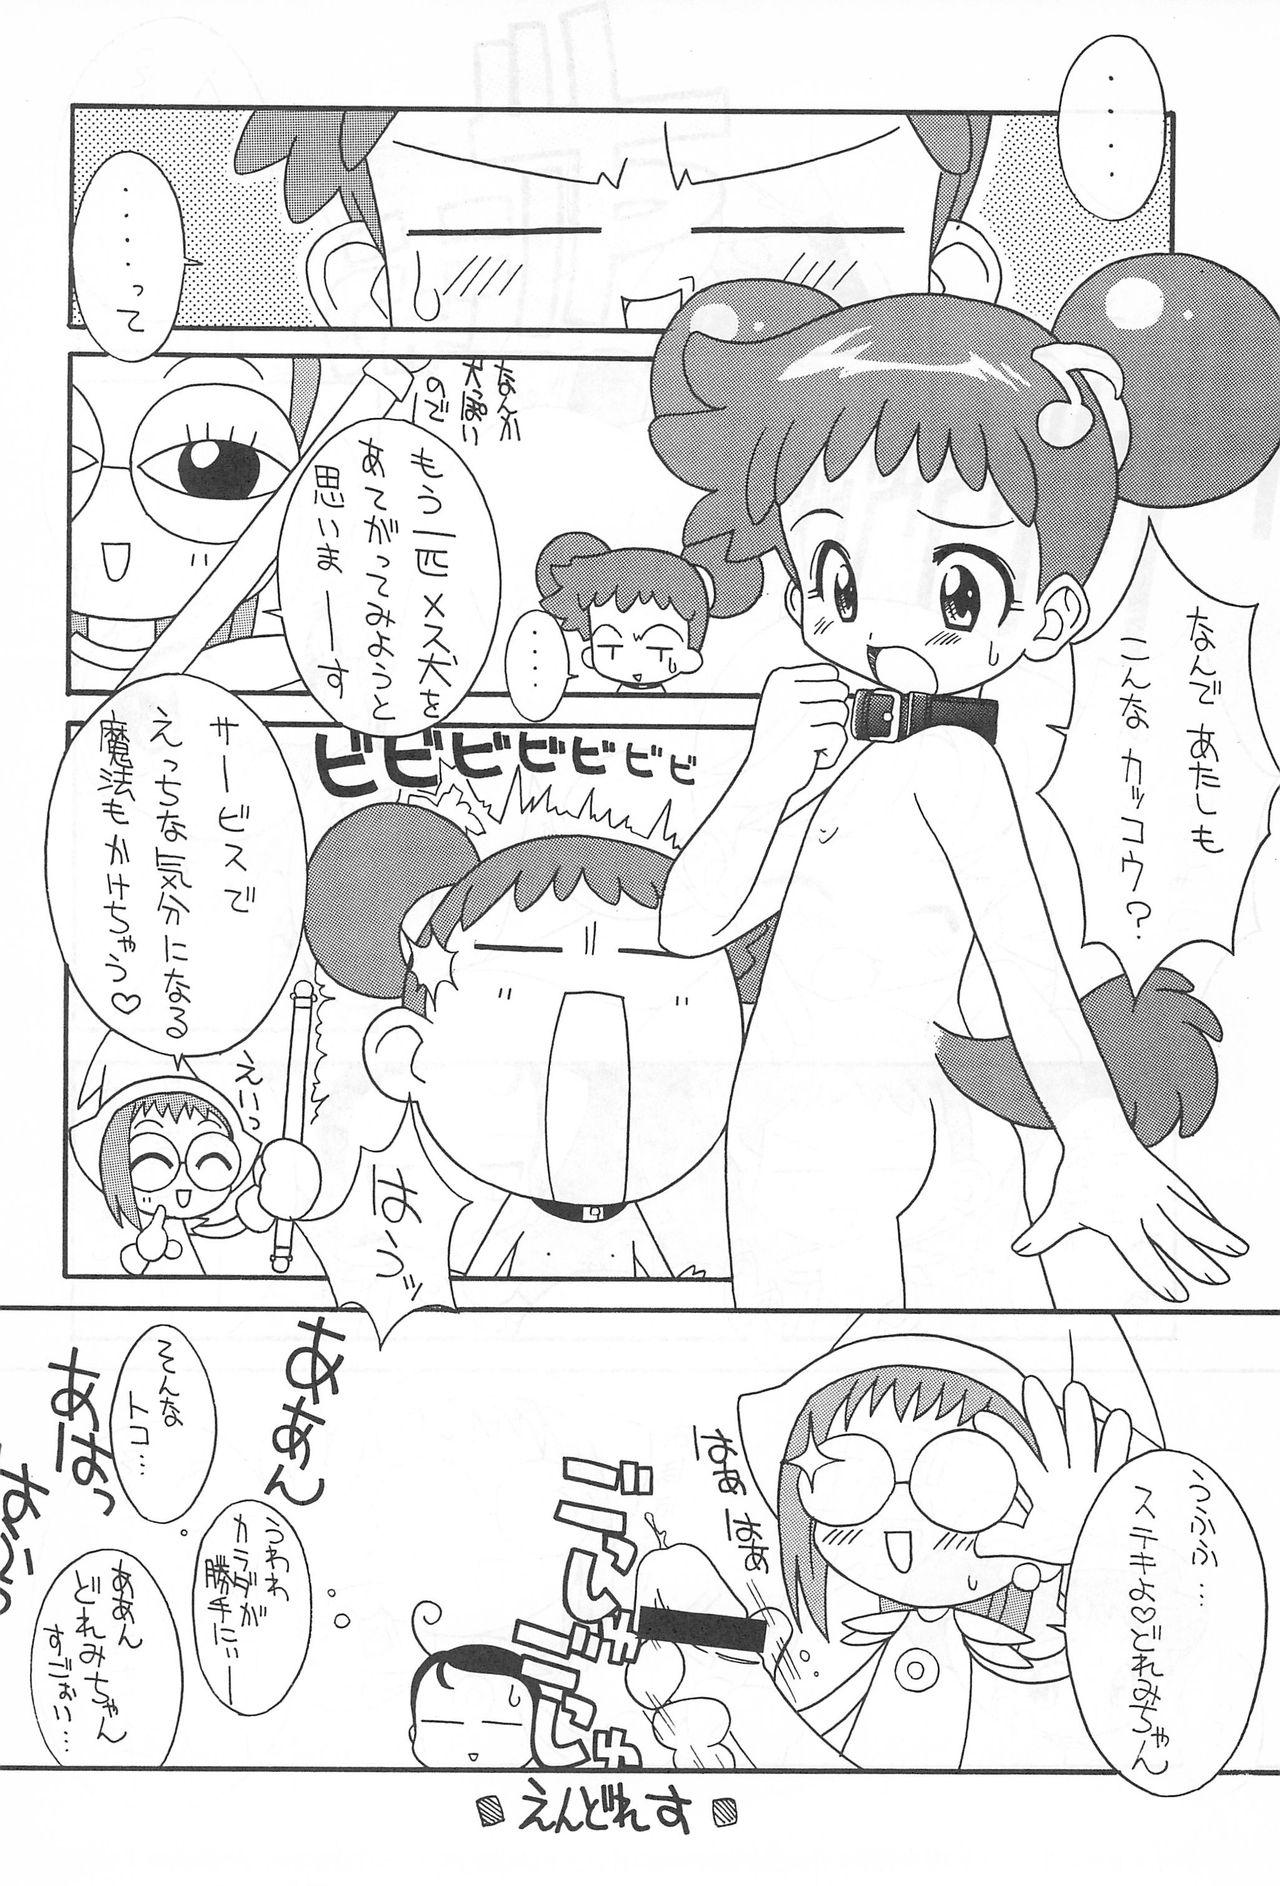 Pervs Pretty Ecchi - Ojamajo doremi Dance - Page 10